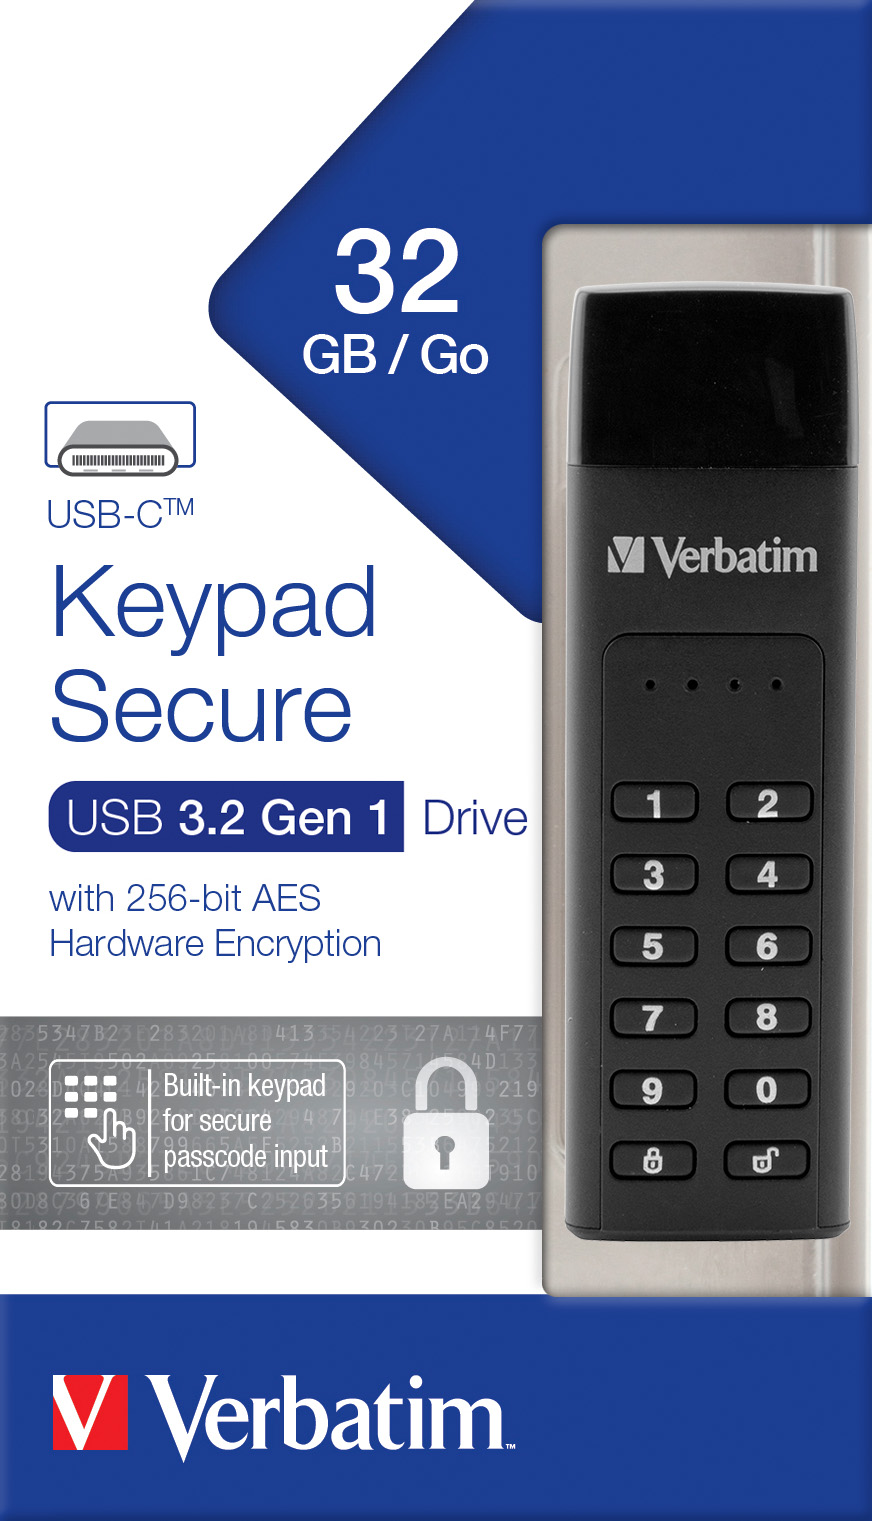 Verbatim USB 3.2 Stick 32GB, Secure, Keypad, AES-256-Bit Typ-C, (R) 160MB/s, (W) 130MB/s, Retail